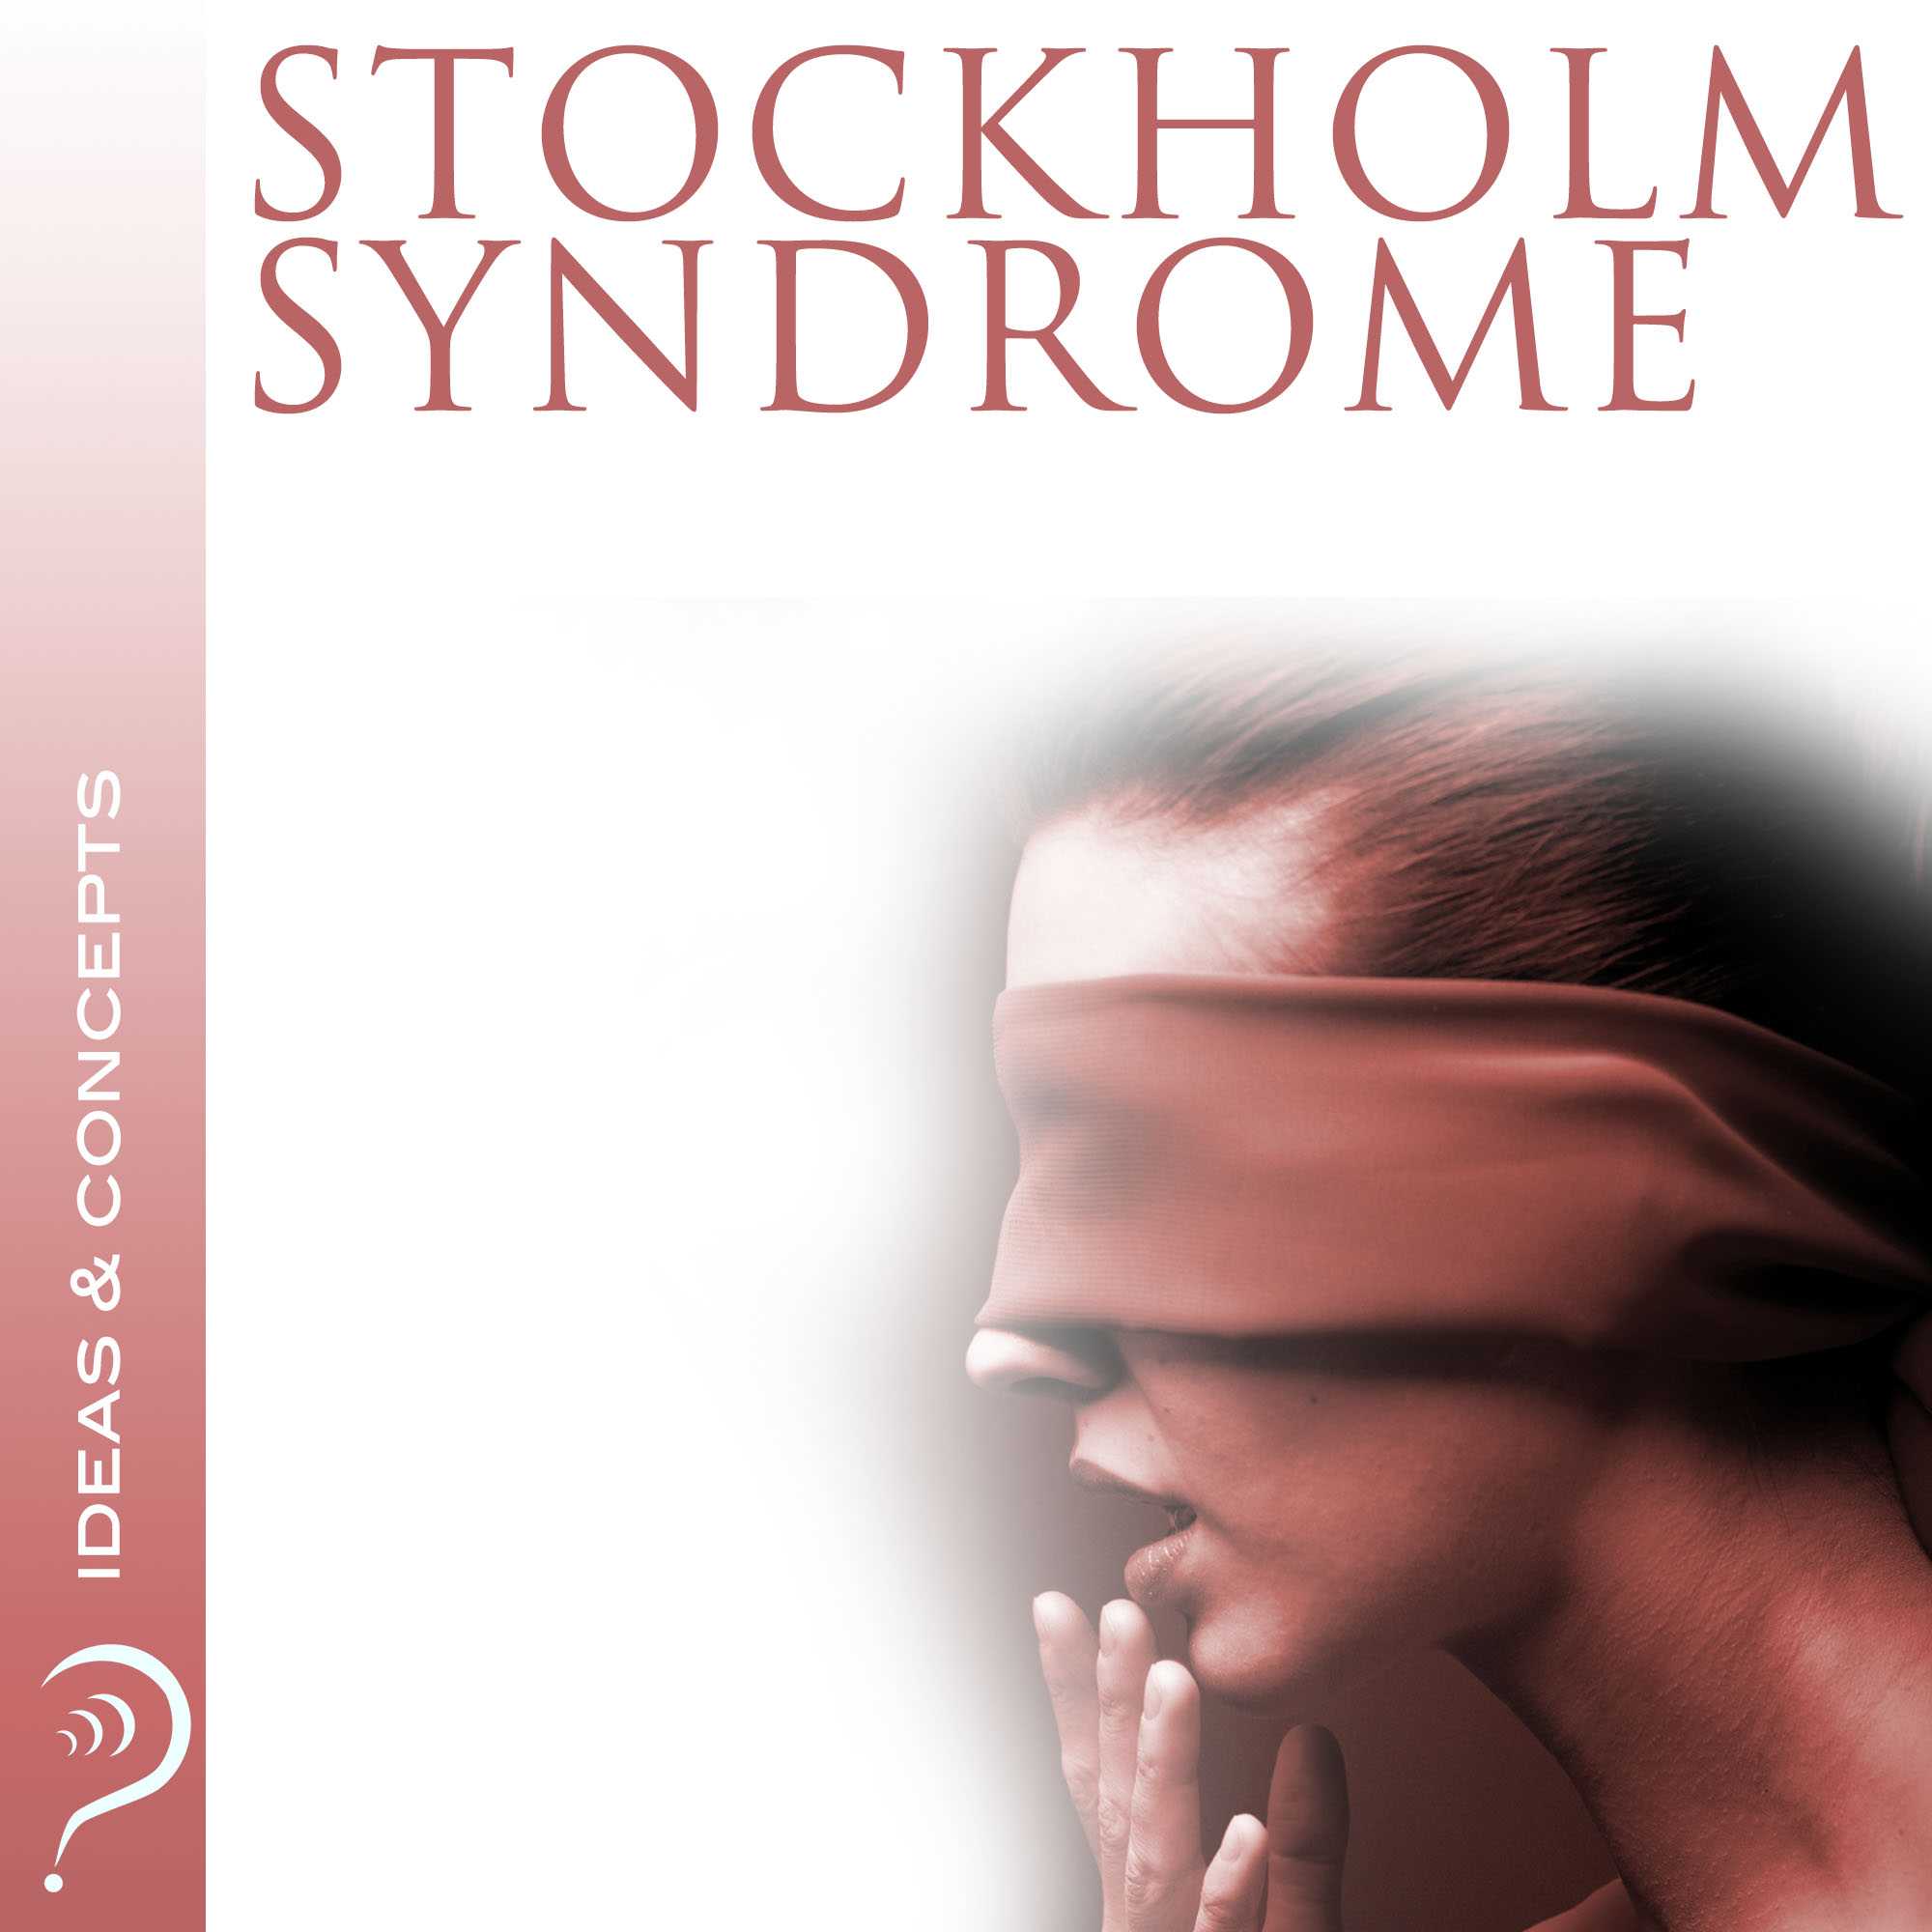 Стокгольмский синдром - что это такое, причины возникновения